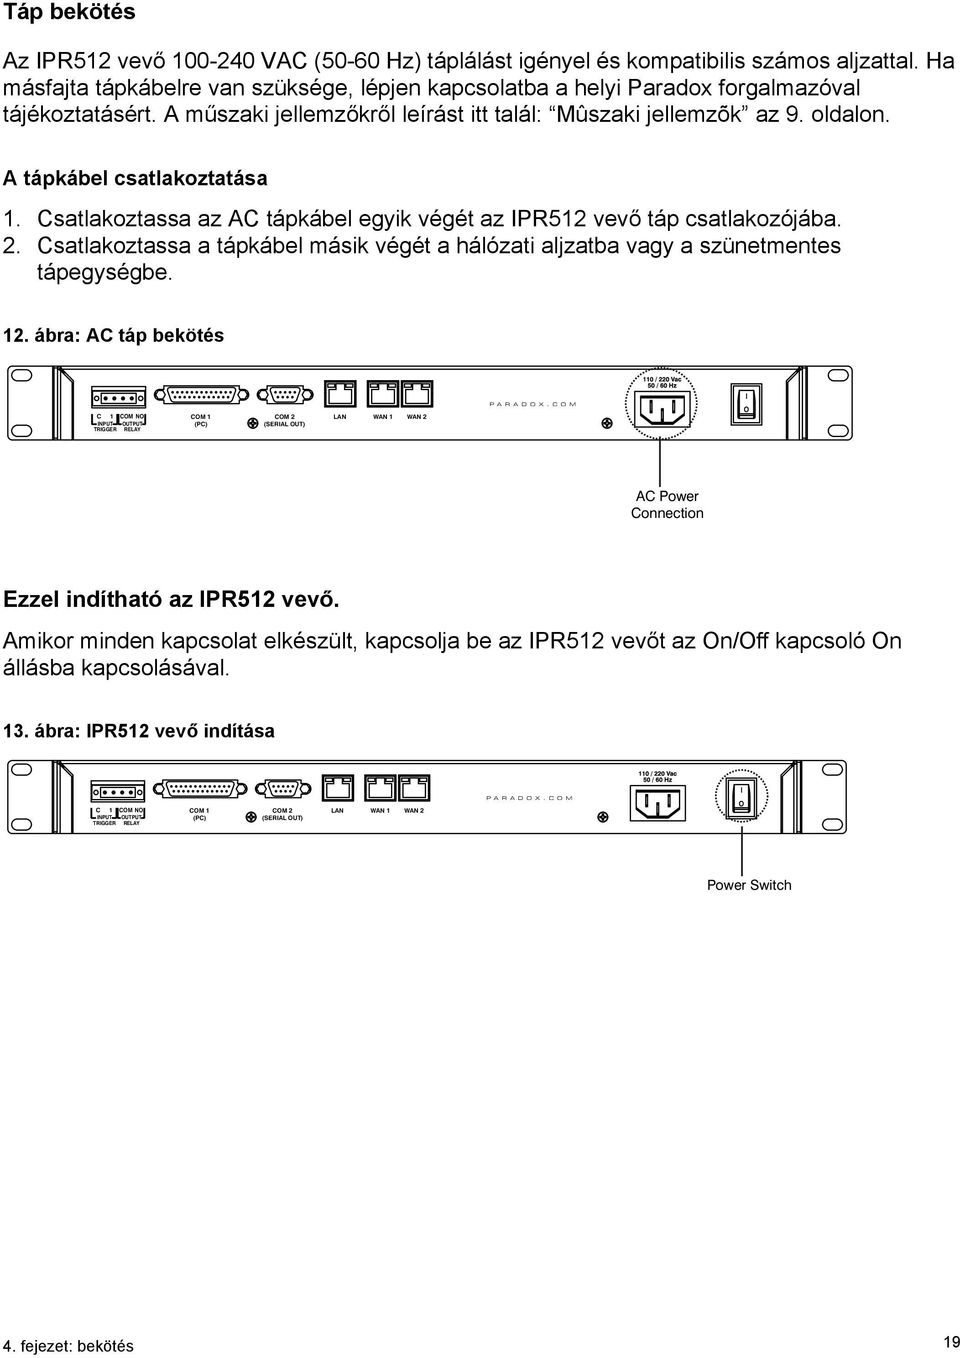 A tápkábel csatlakoztatása 1. Csatlakoztassa az AC tápkábel egyik végét az IPR512 vevő táp csatlakozójába. 2. Csatlakoztassa a tápkábel másik végét a hálózati aljzatba vagy a szünetmentes tápegységbe.